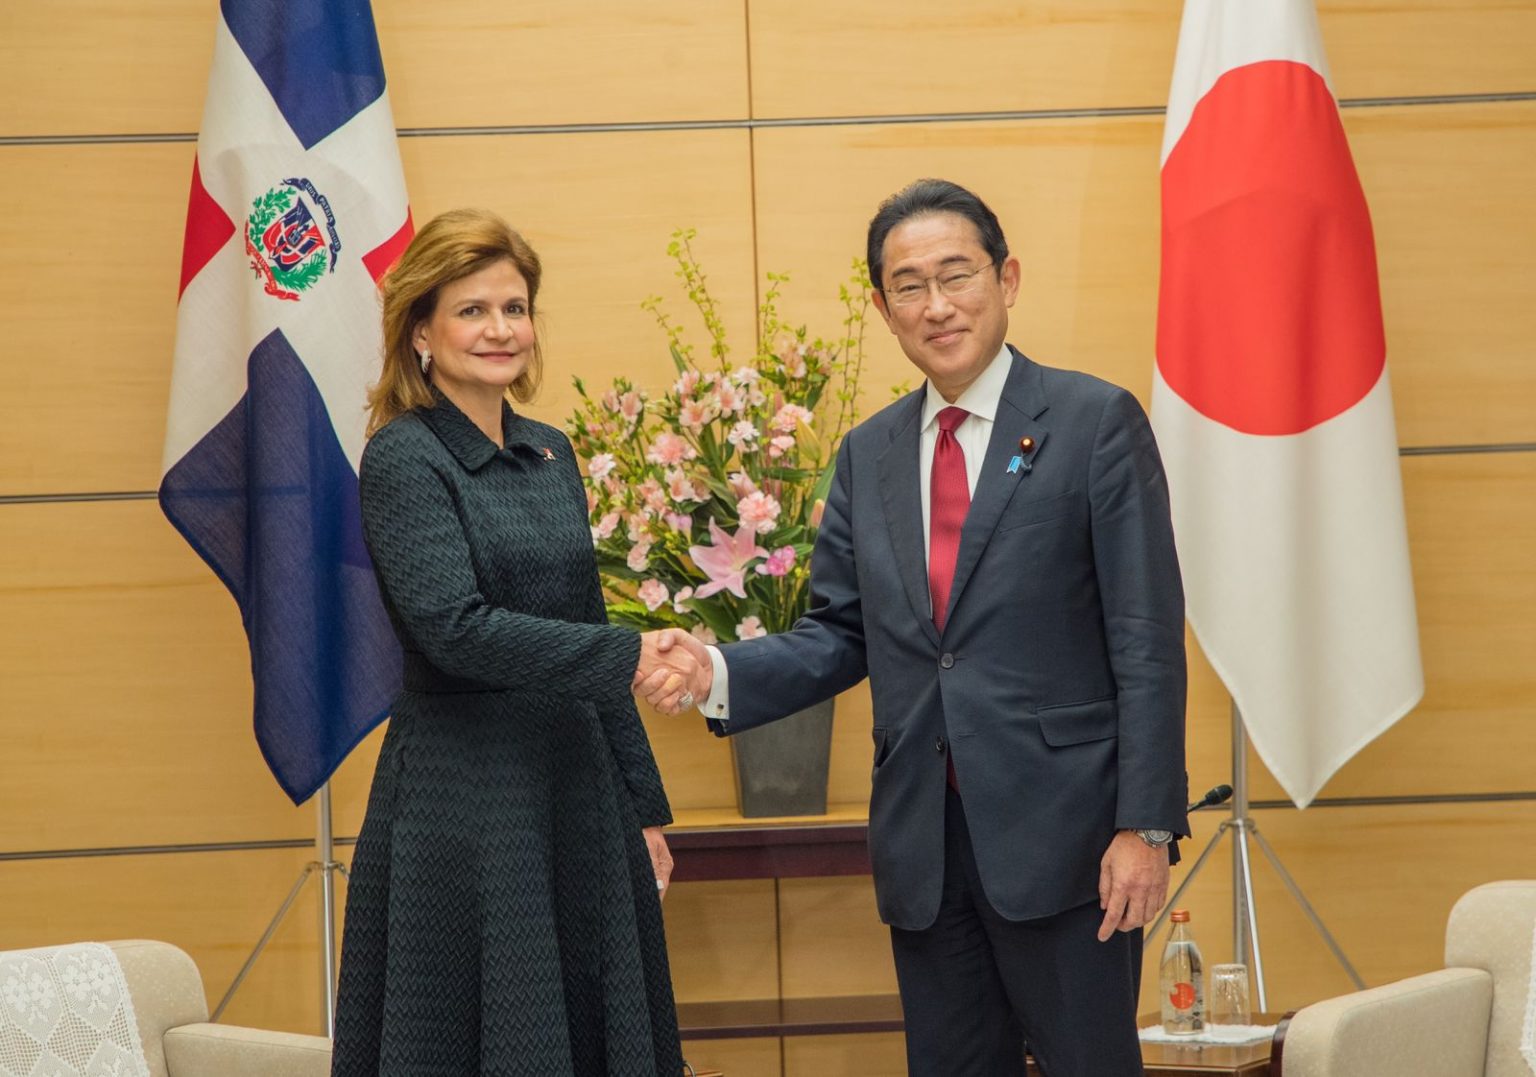 Vicepresidenta de Republica Dominicana culmina visita a Japon